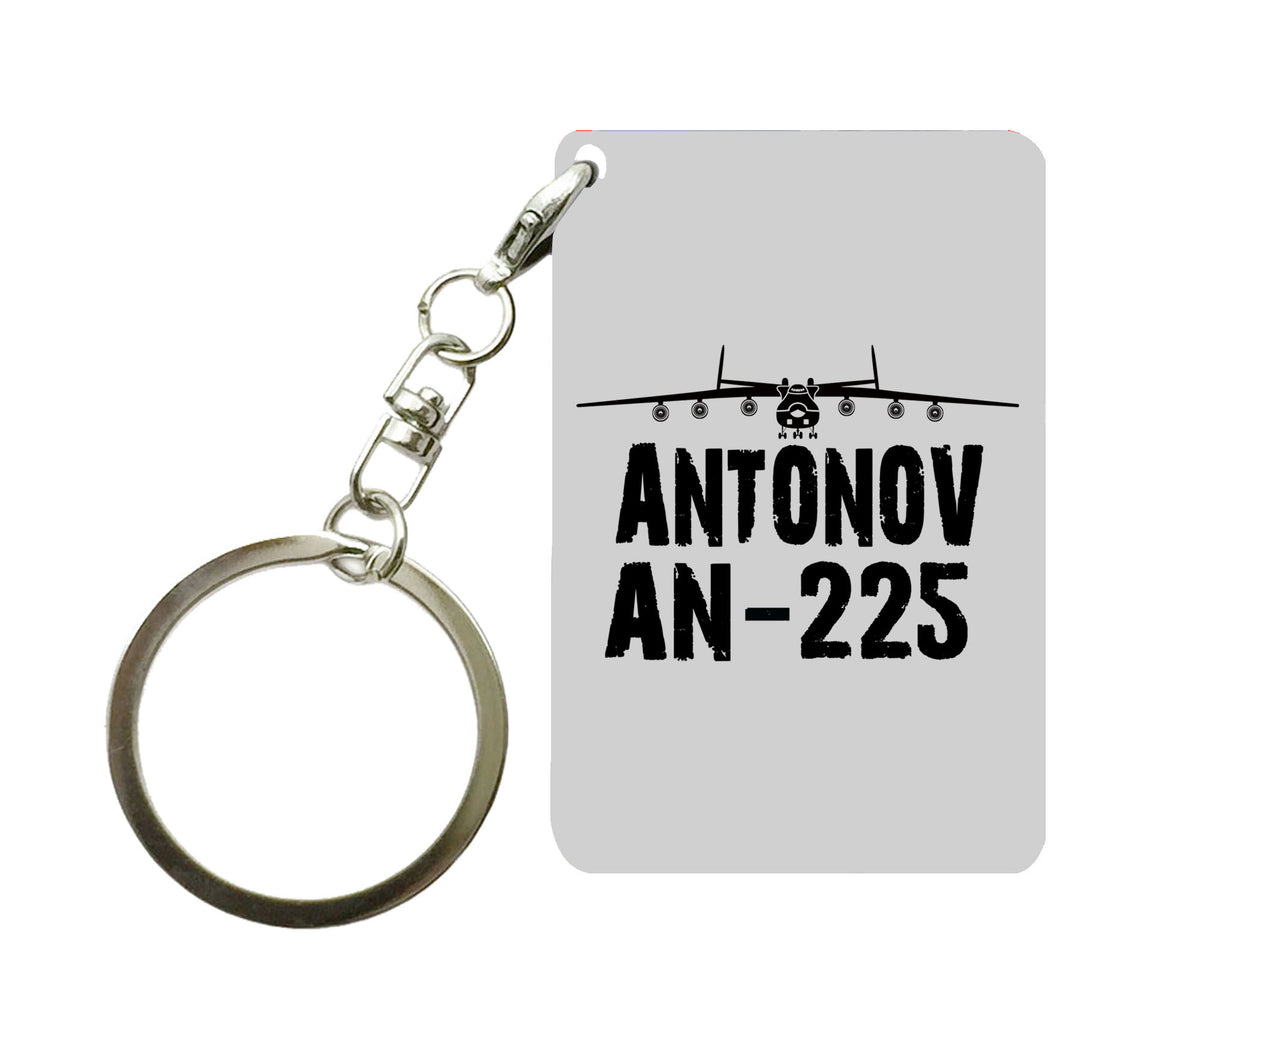 Antonov AN-225 & Plane Designed Key Chains